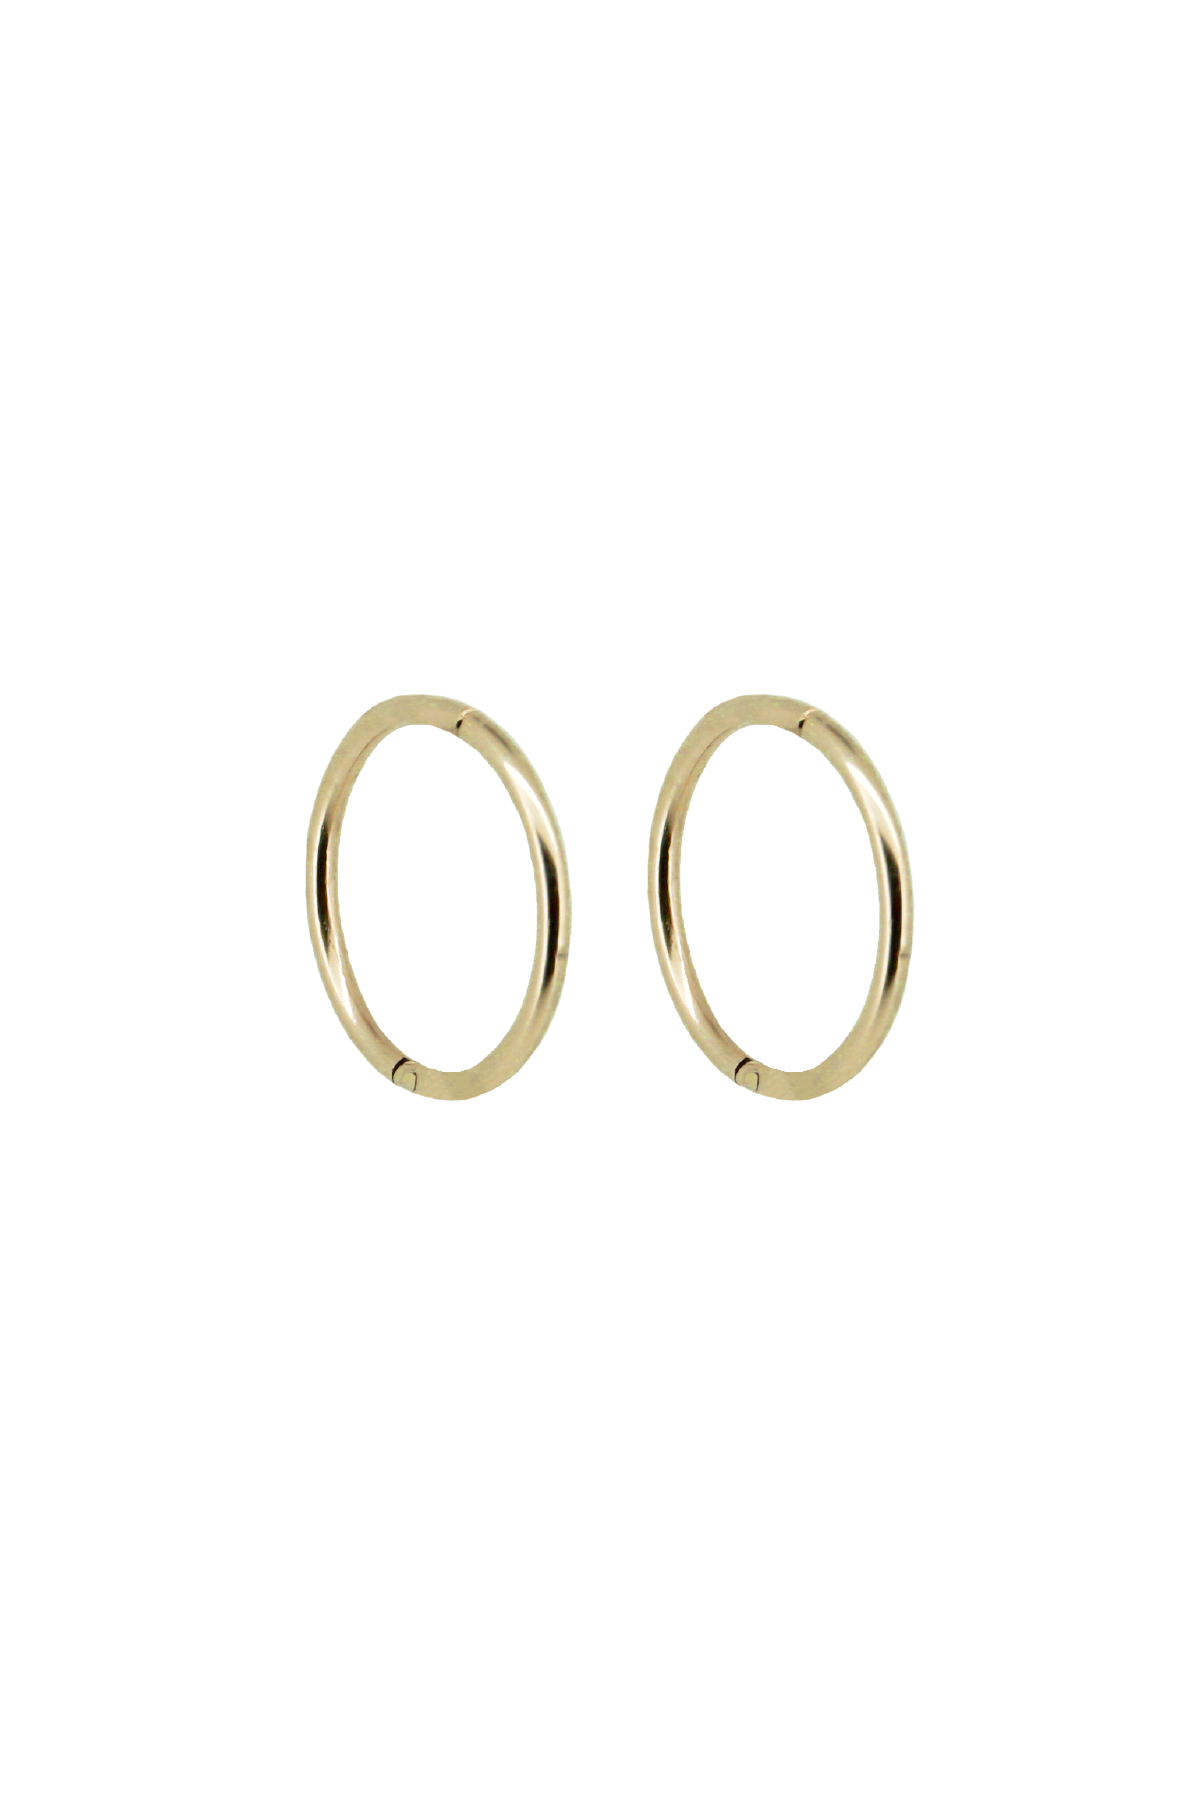 Yellow Gold Hoop Earrings -14-Karat Solid Yellow Gold Hoop Earrings :